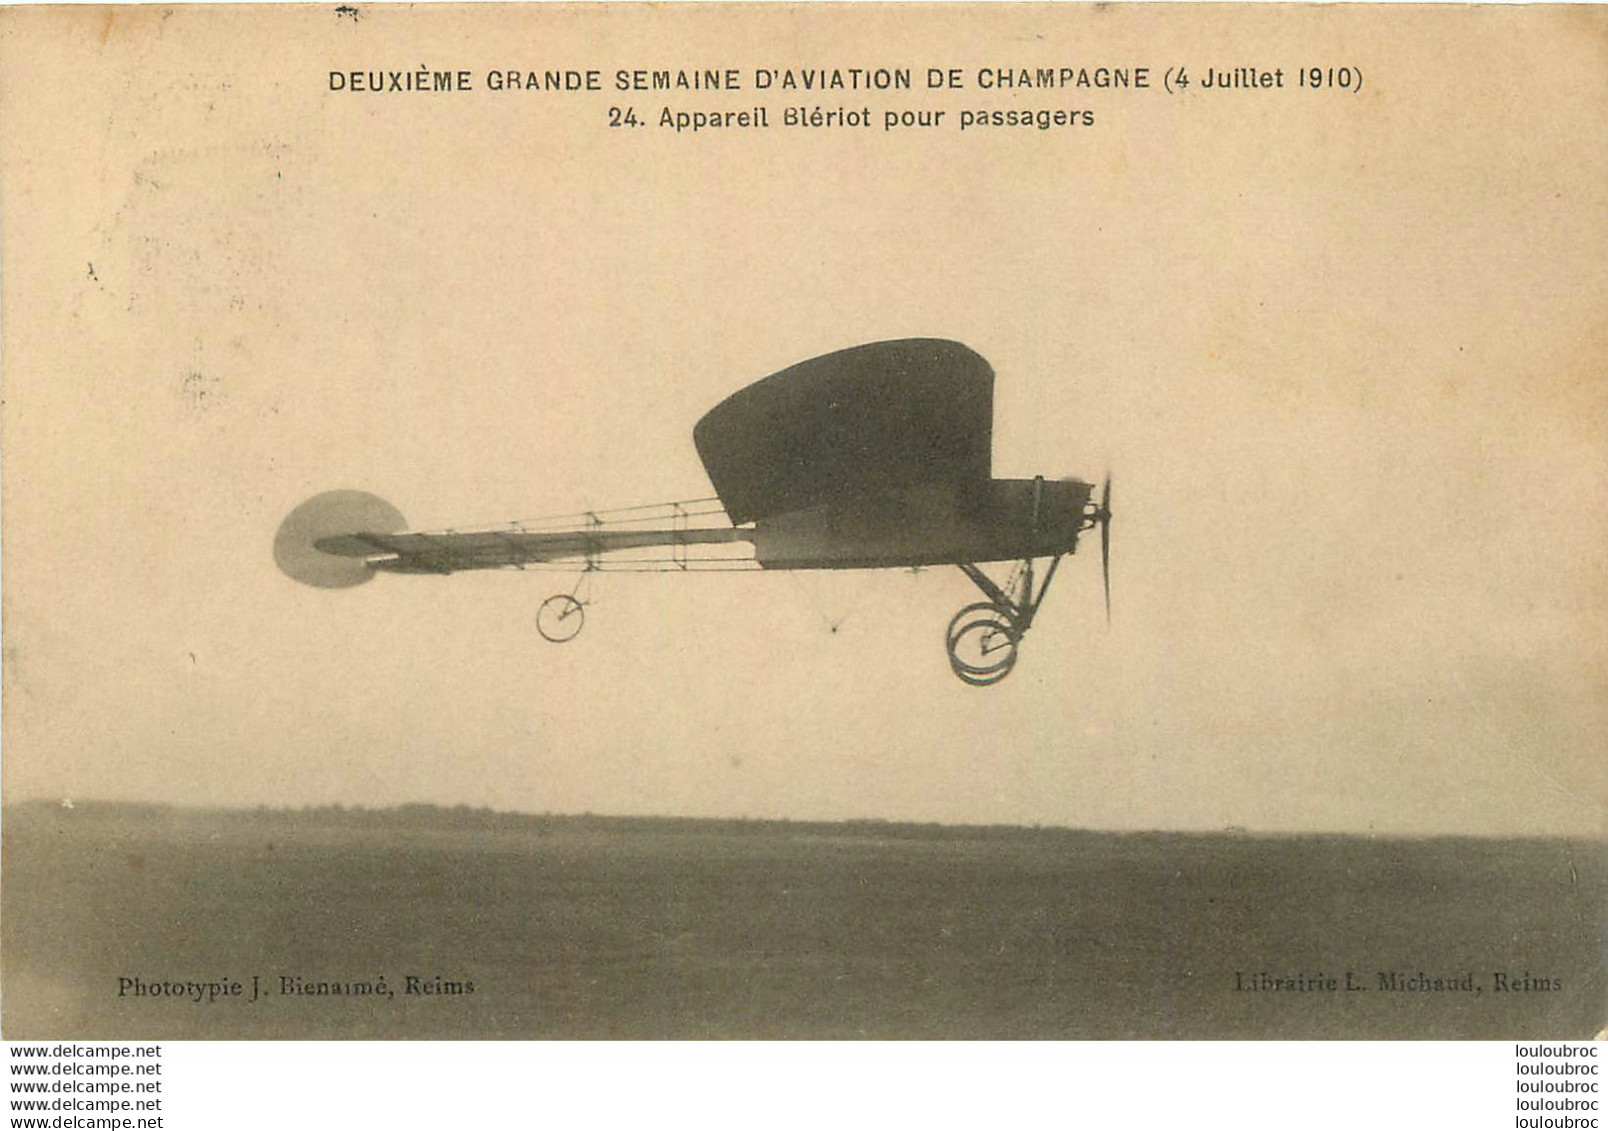 DEUXIEME GRANDE SEMAINE D'AVIATION DE CHAMPAGNE JUILLET 1910 APPAREIL BLERIOT POUR PASSAGERS - Meetings